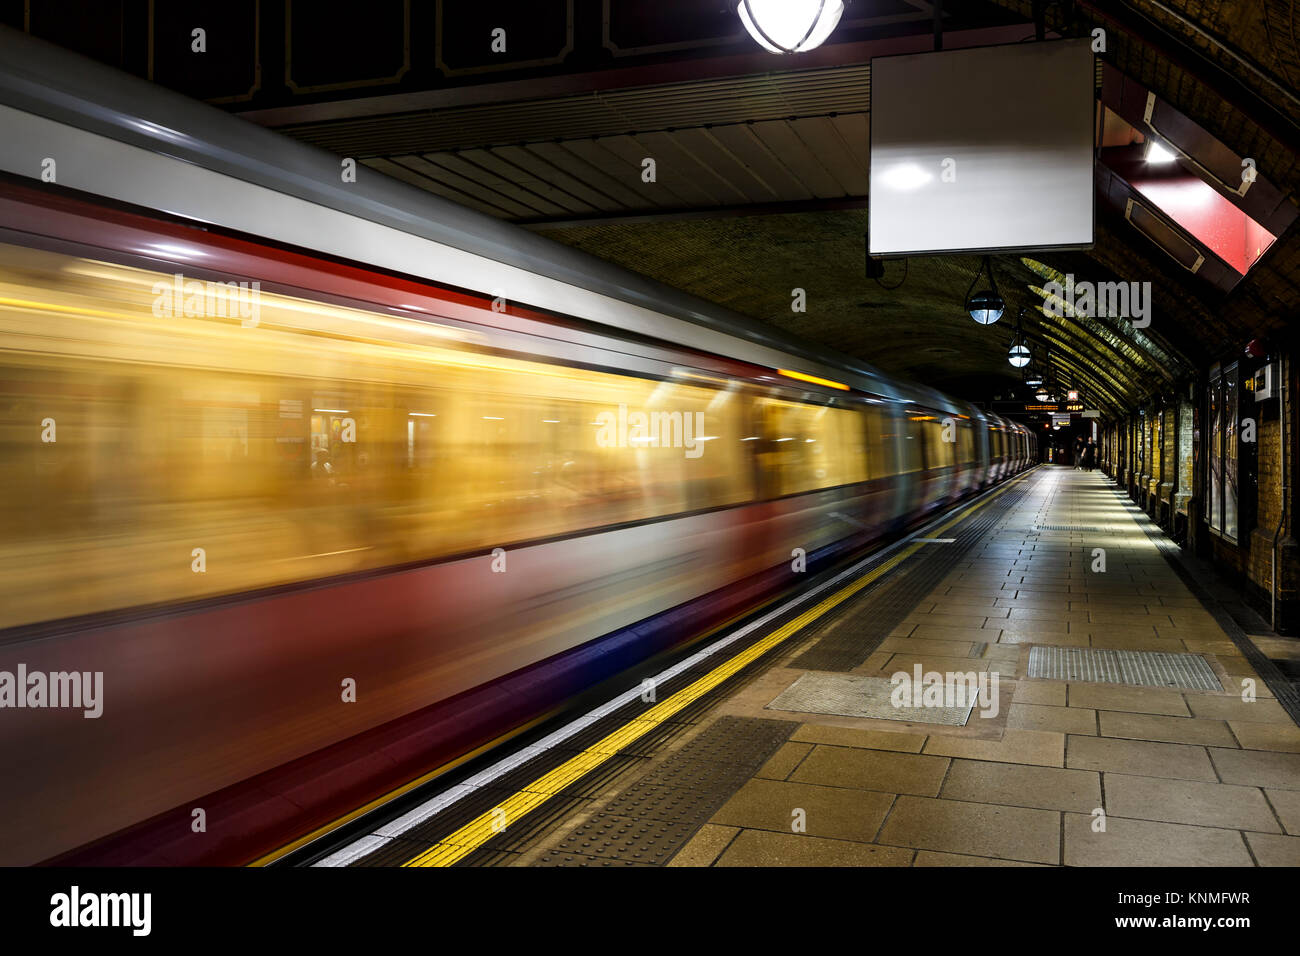 Métro (Tube) train voiture filant par, la station de métro Baker Street, Londres, Angleterre, Royaume-Uni Banque D'Images